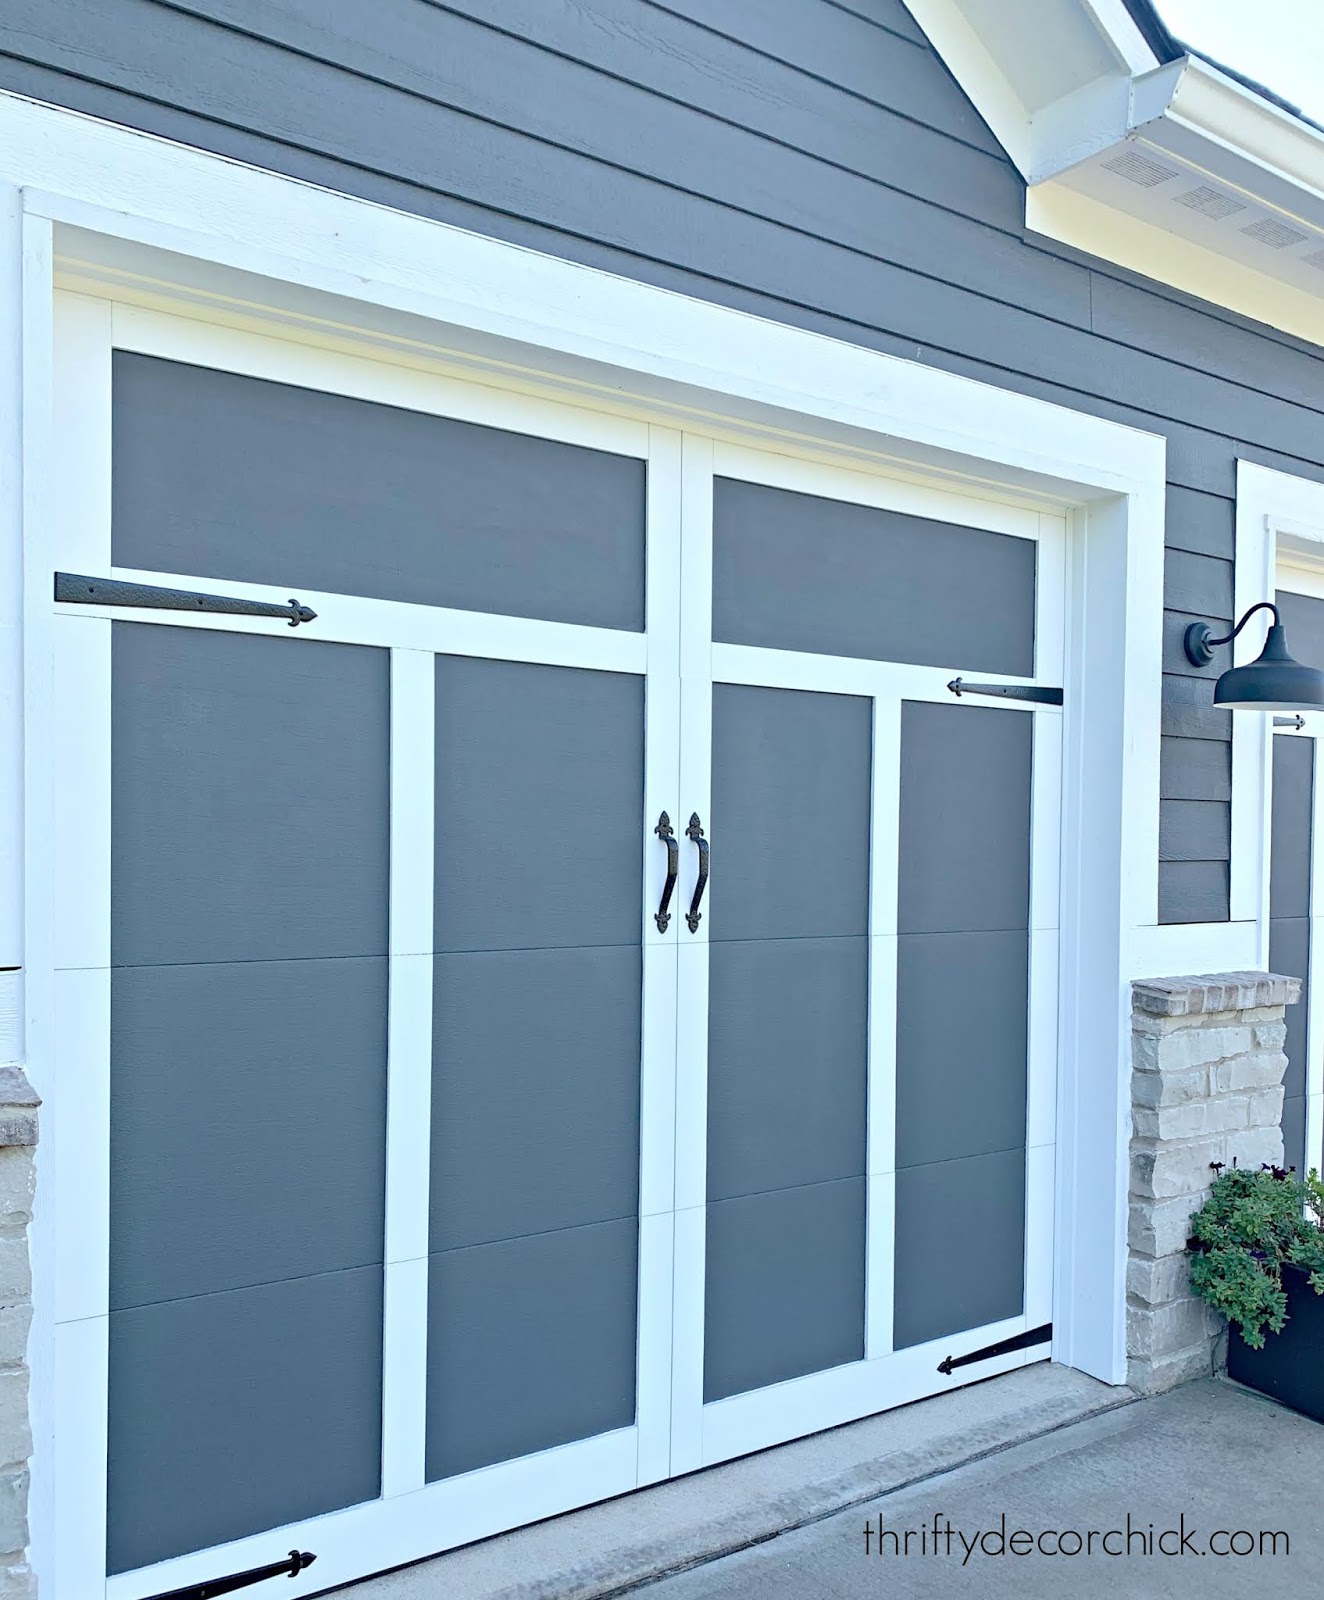 Somerset garage door design with hardware